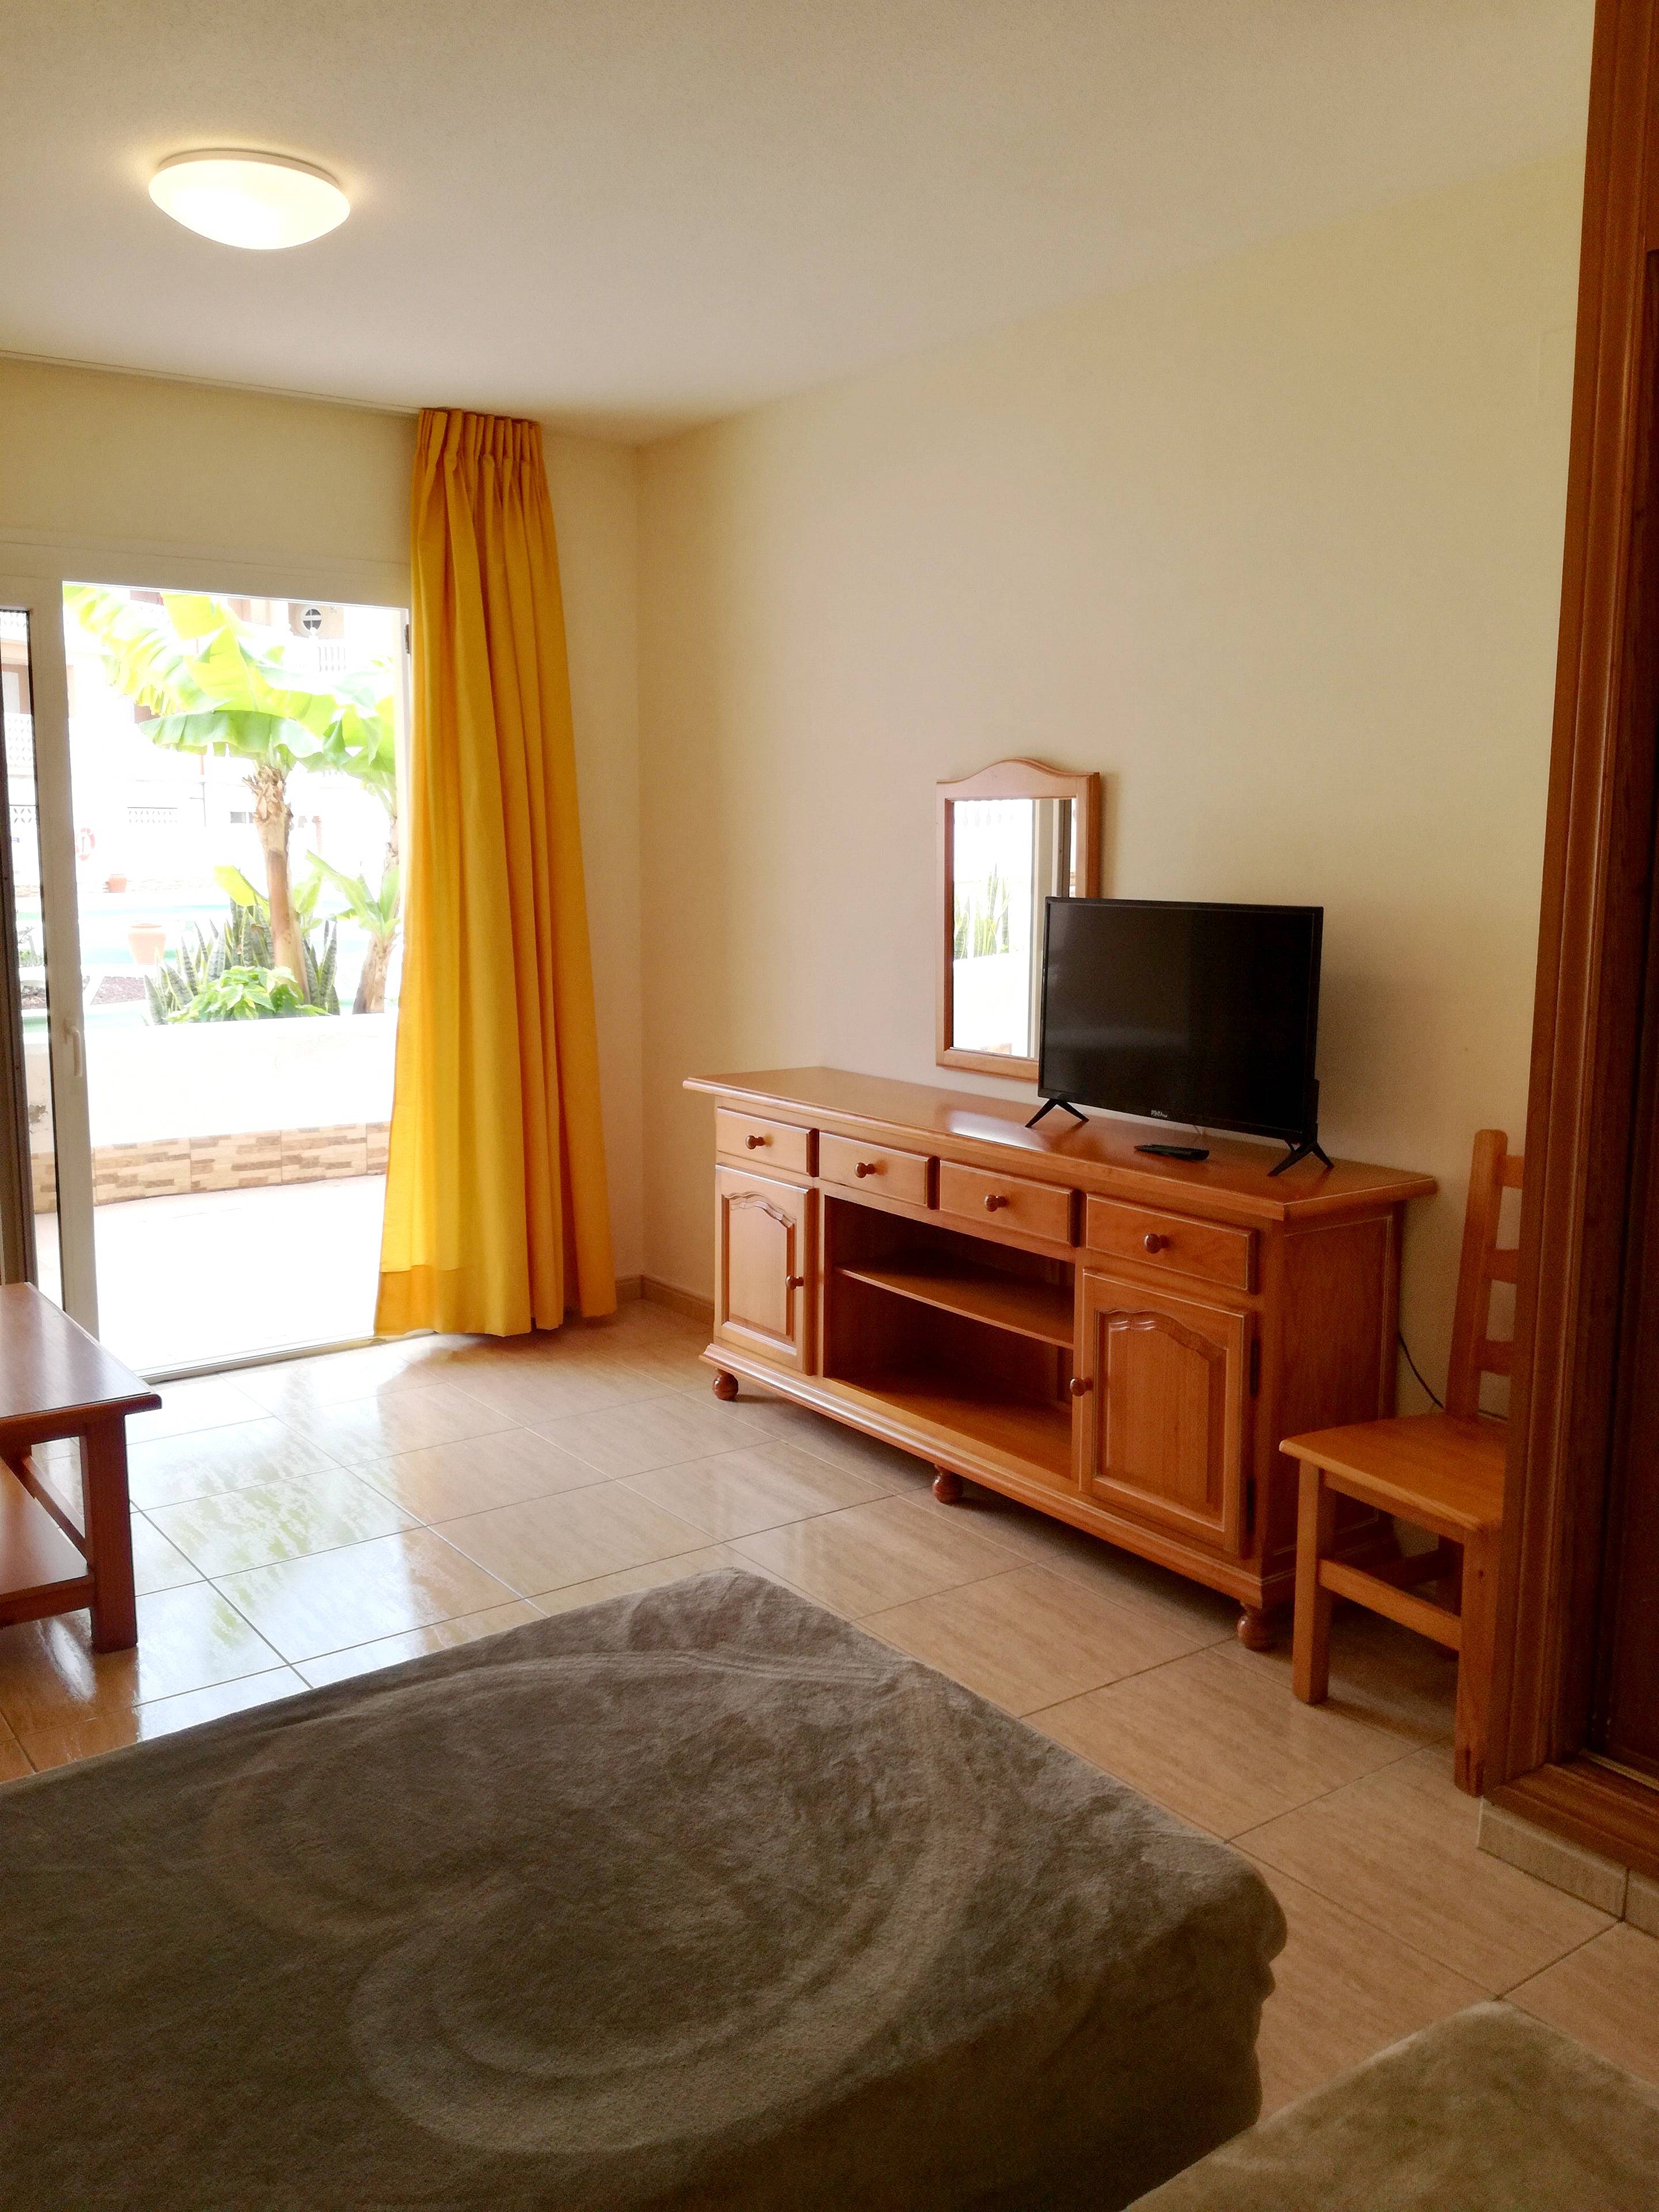 Alquiler apartamentos vacacionales en Adeje - Tenerife y ...